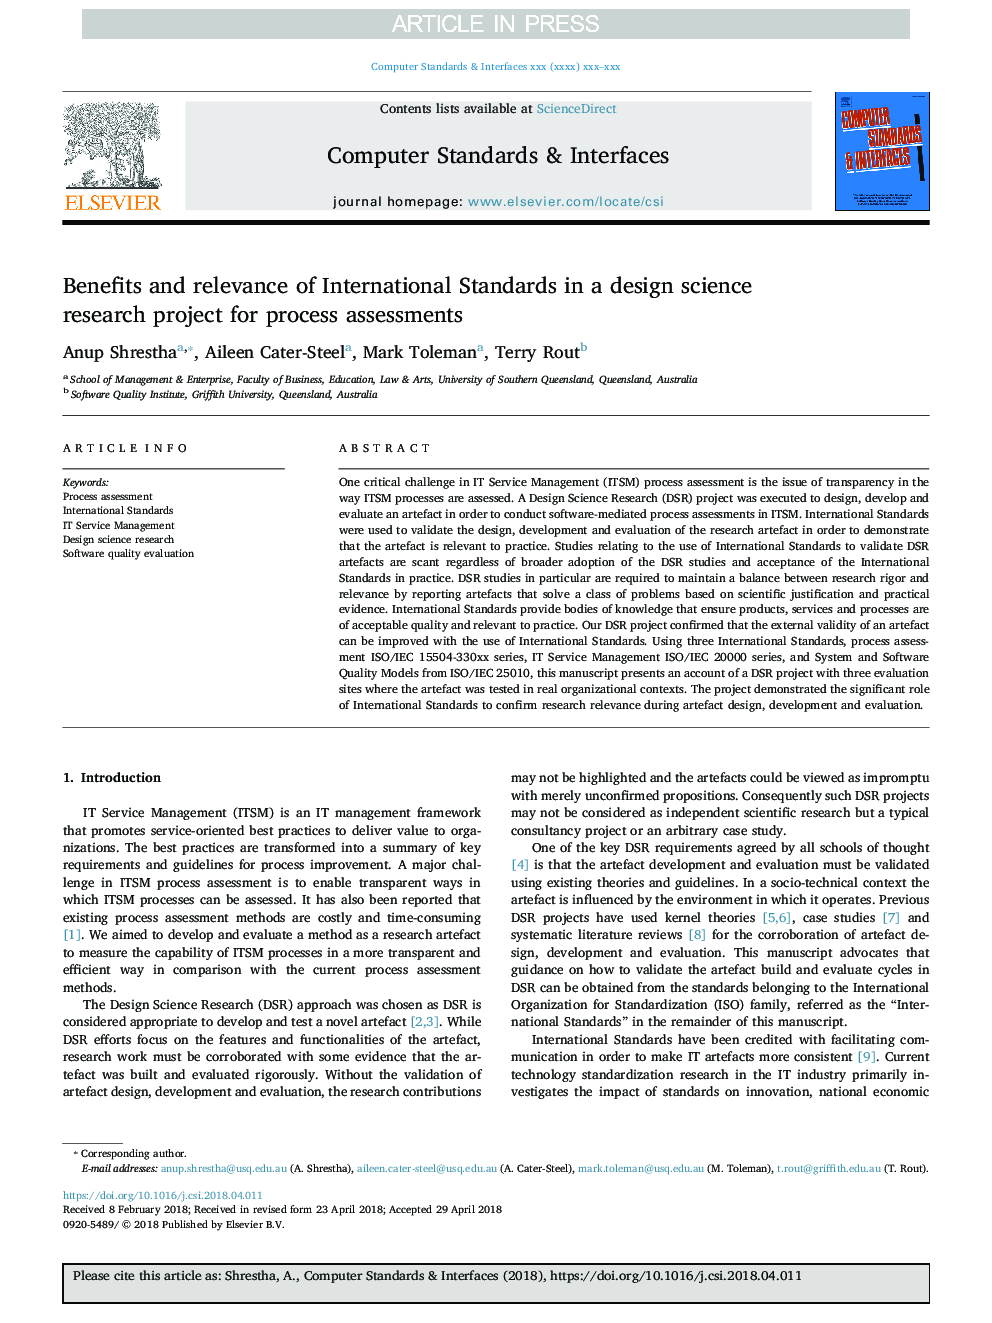 مزایا و معیارهای استانداردهای بین المللی در یک تحقیق علمی طراحی علمی برای ارزیابی فرآیند 